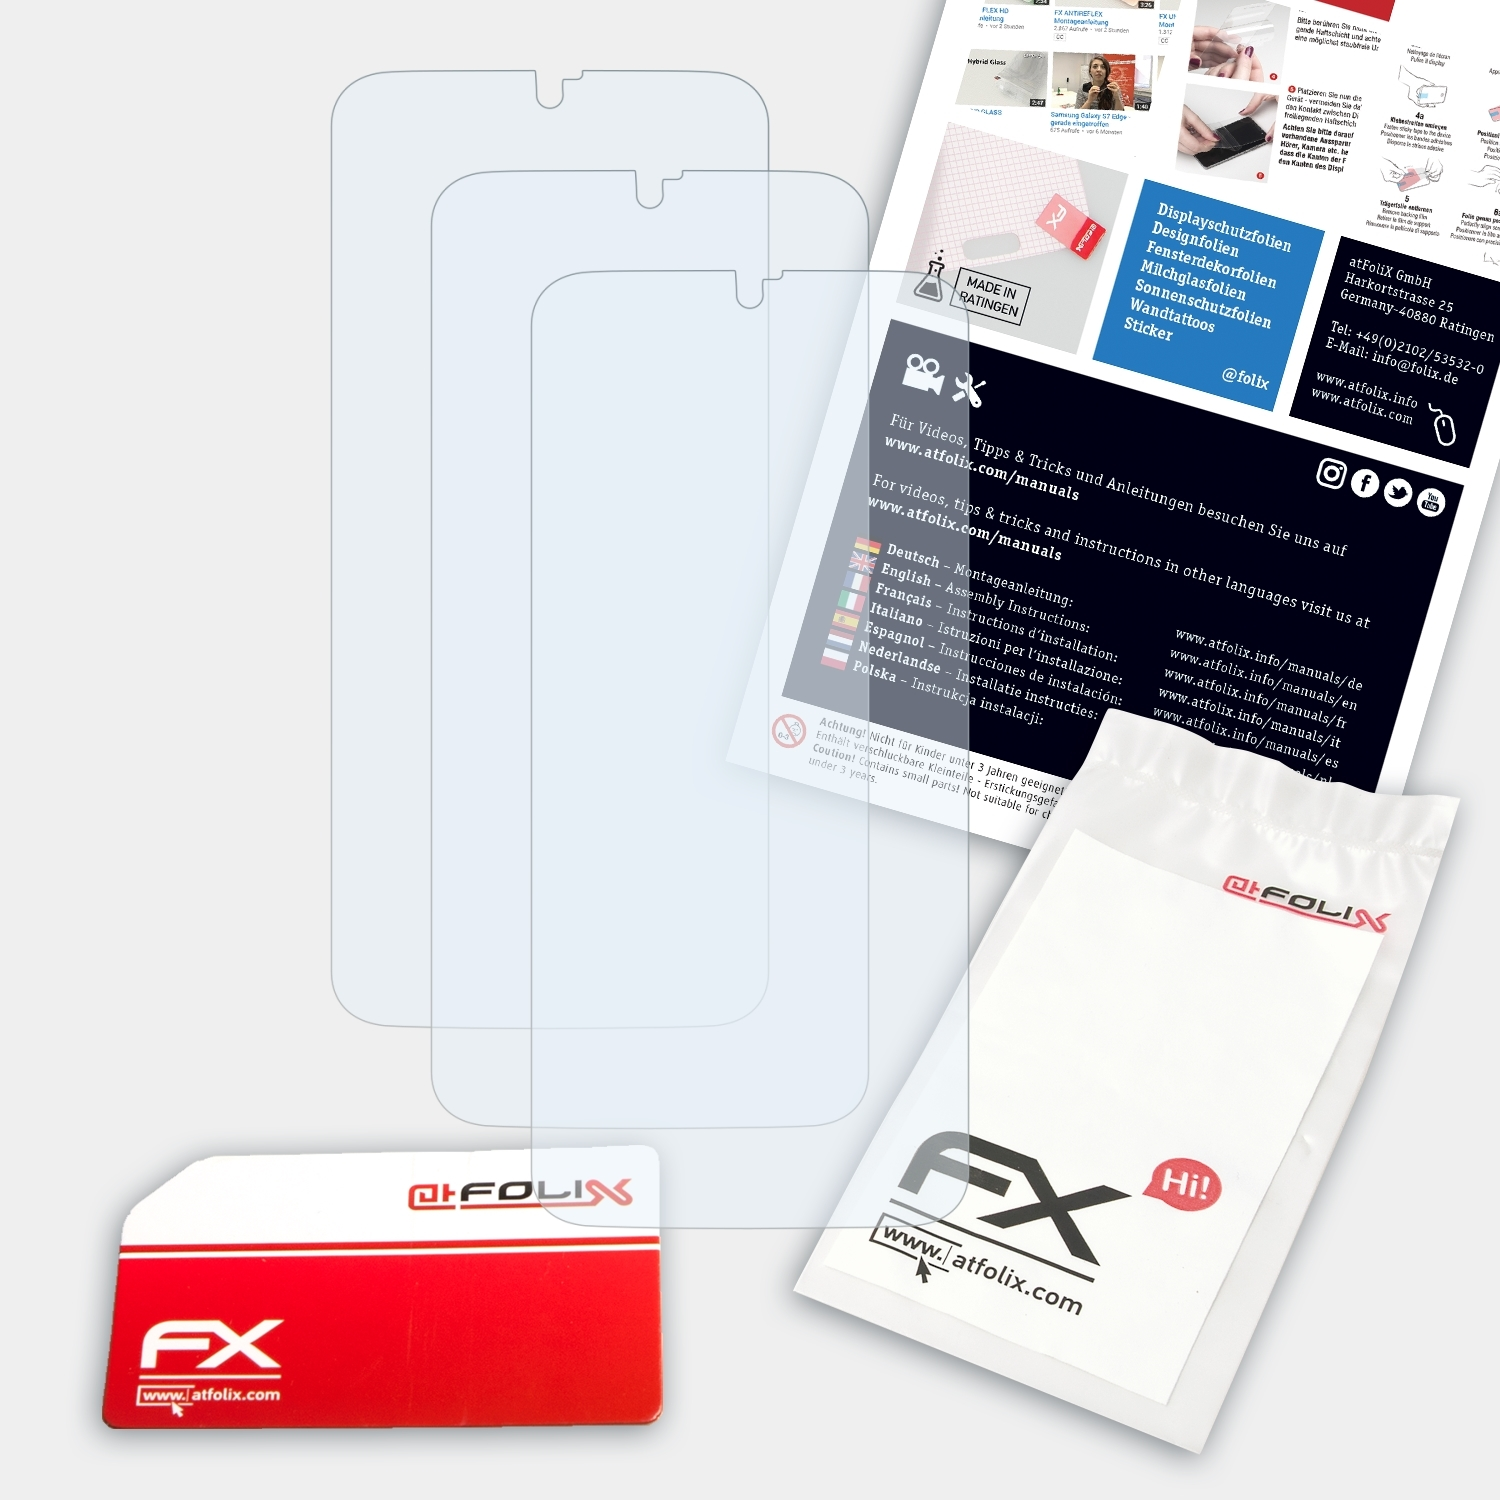 ATFOLIX 3x Displayschutz(für FX-Clear T-Mobile Revvlry+)